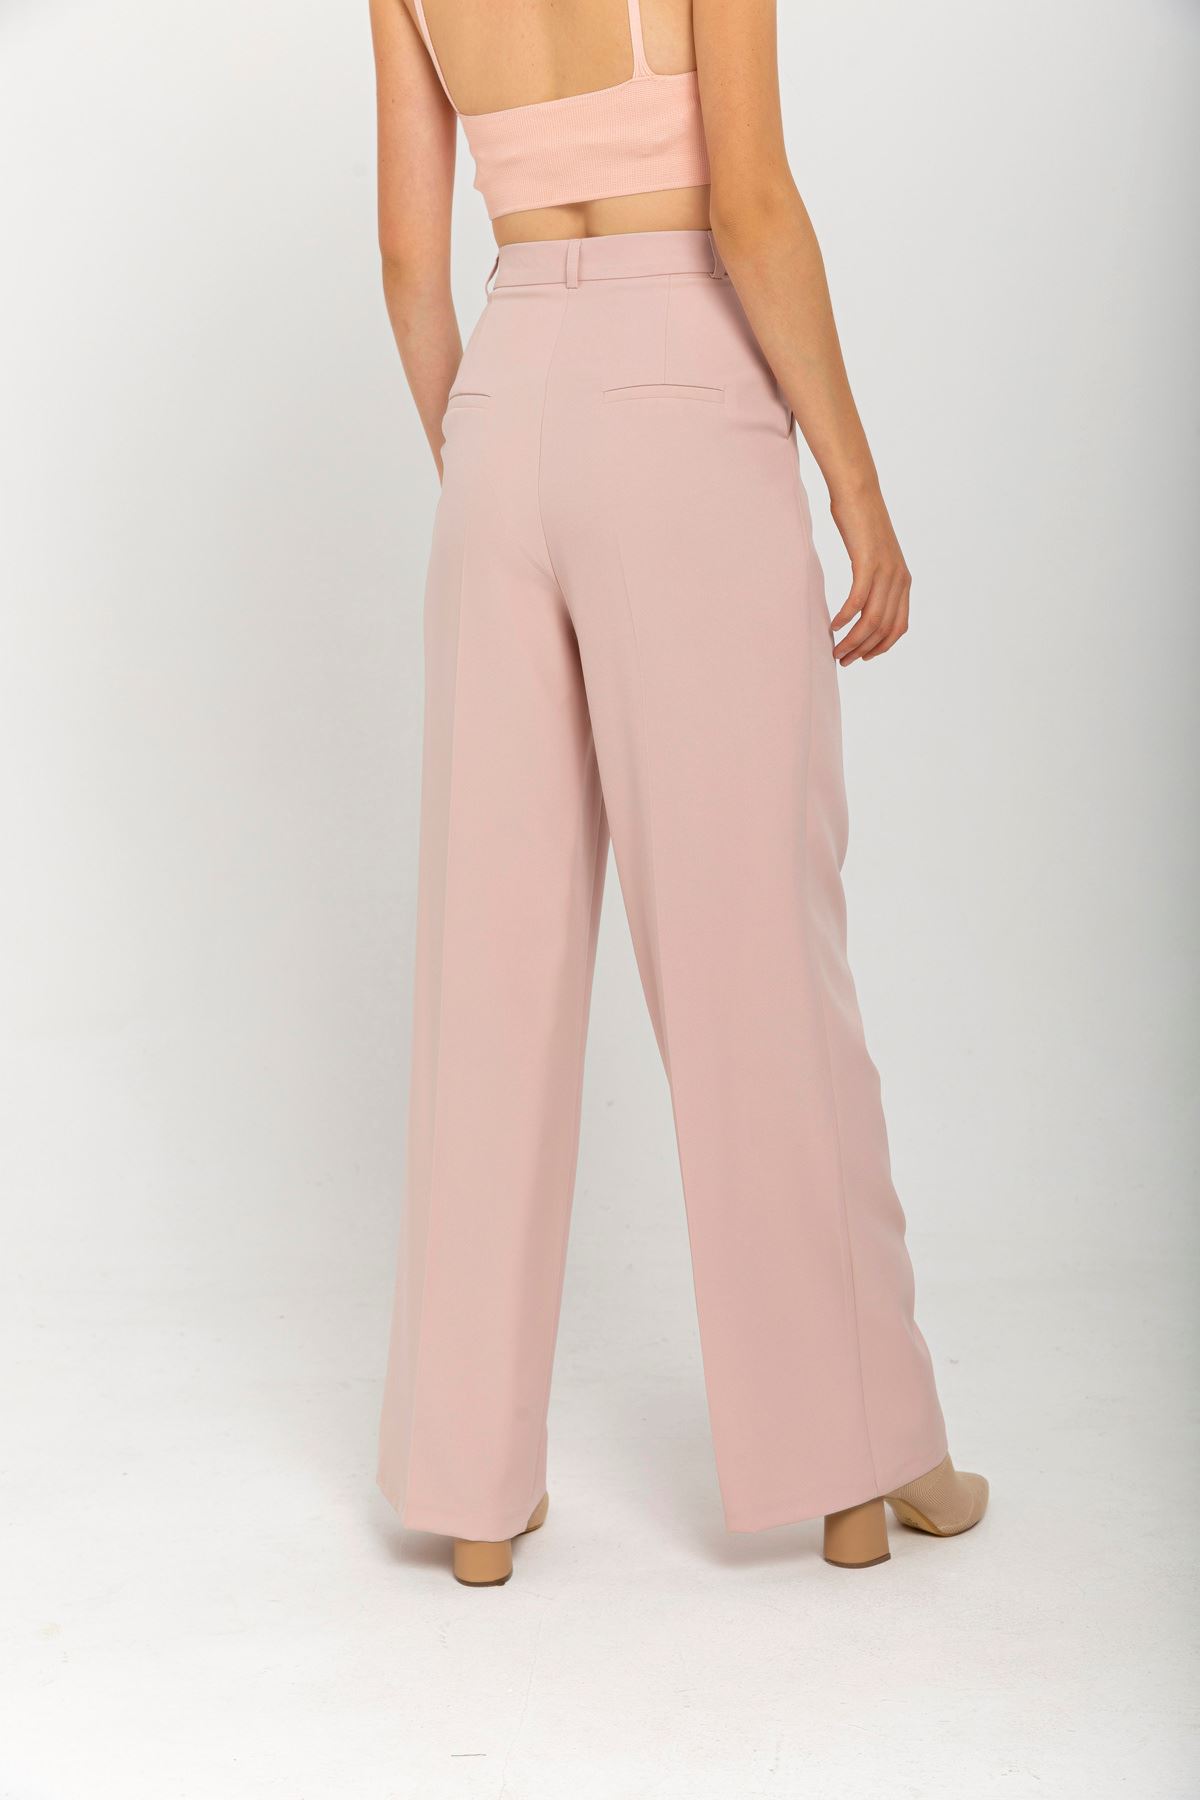 атласный ткань длинный широкий Palazzoженские брюки - Светло розовый